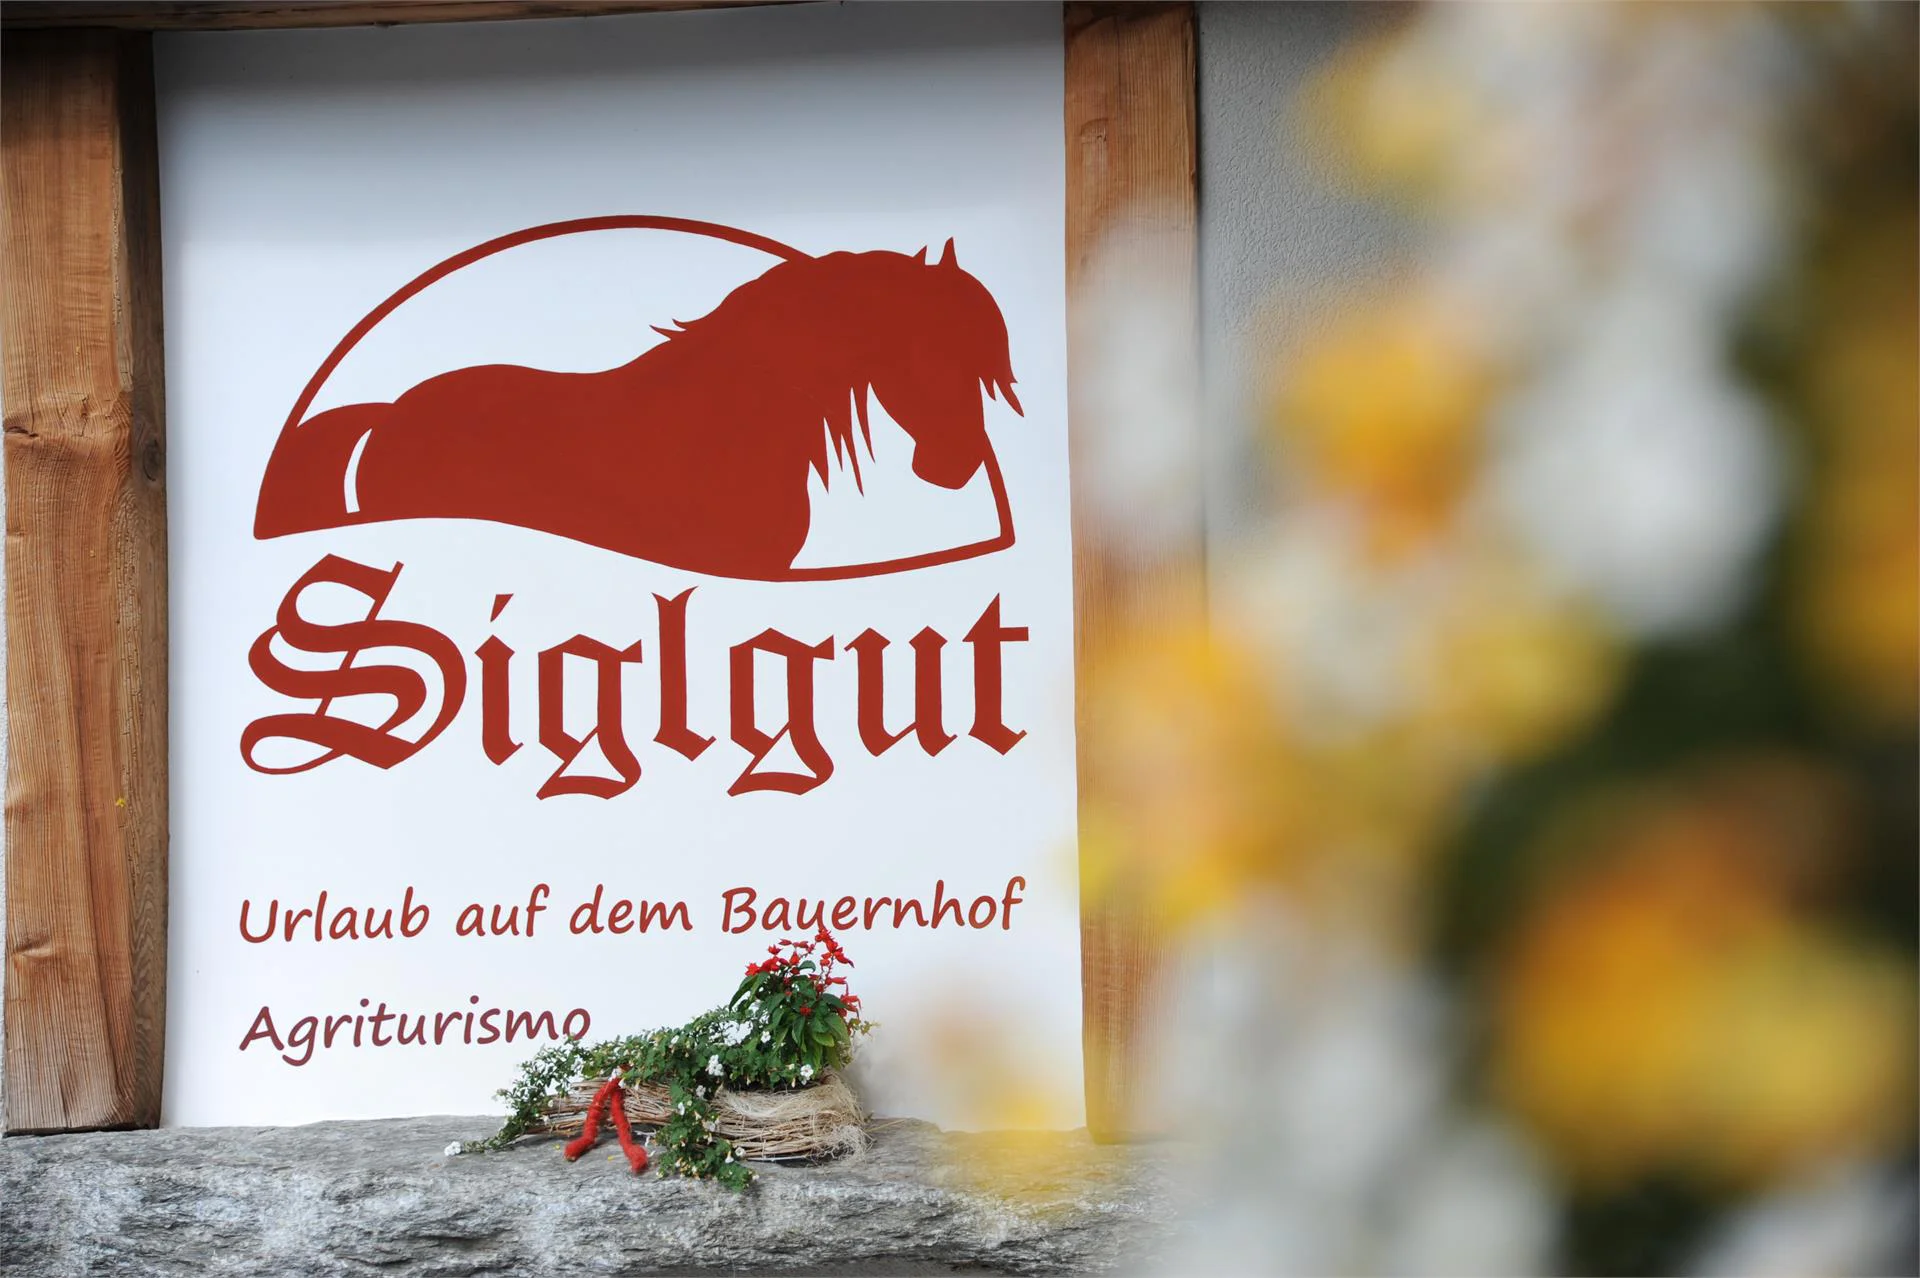 Ferienwohnungen Siglgut Latsch 3 suedtirol.info